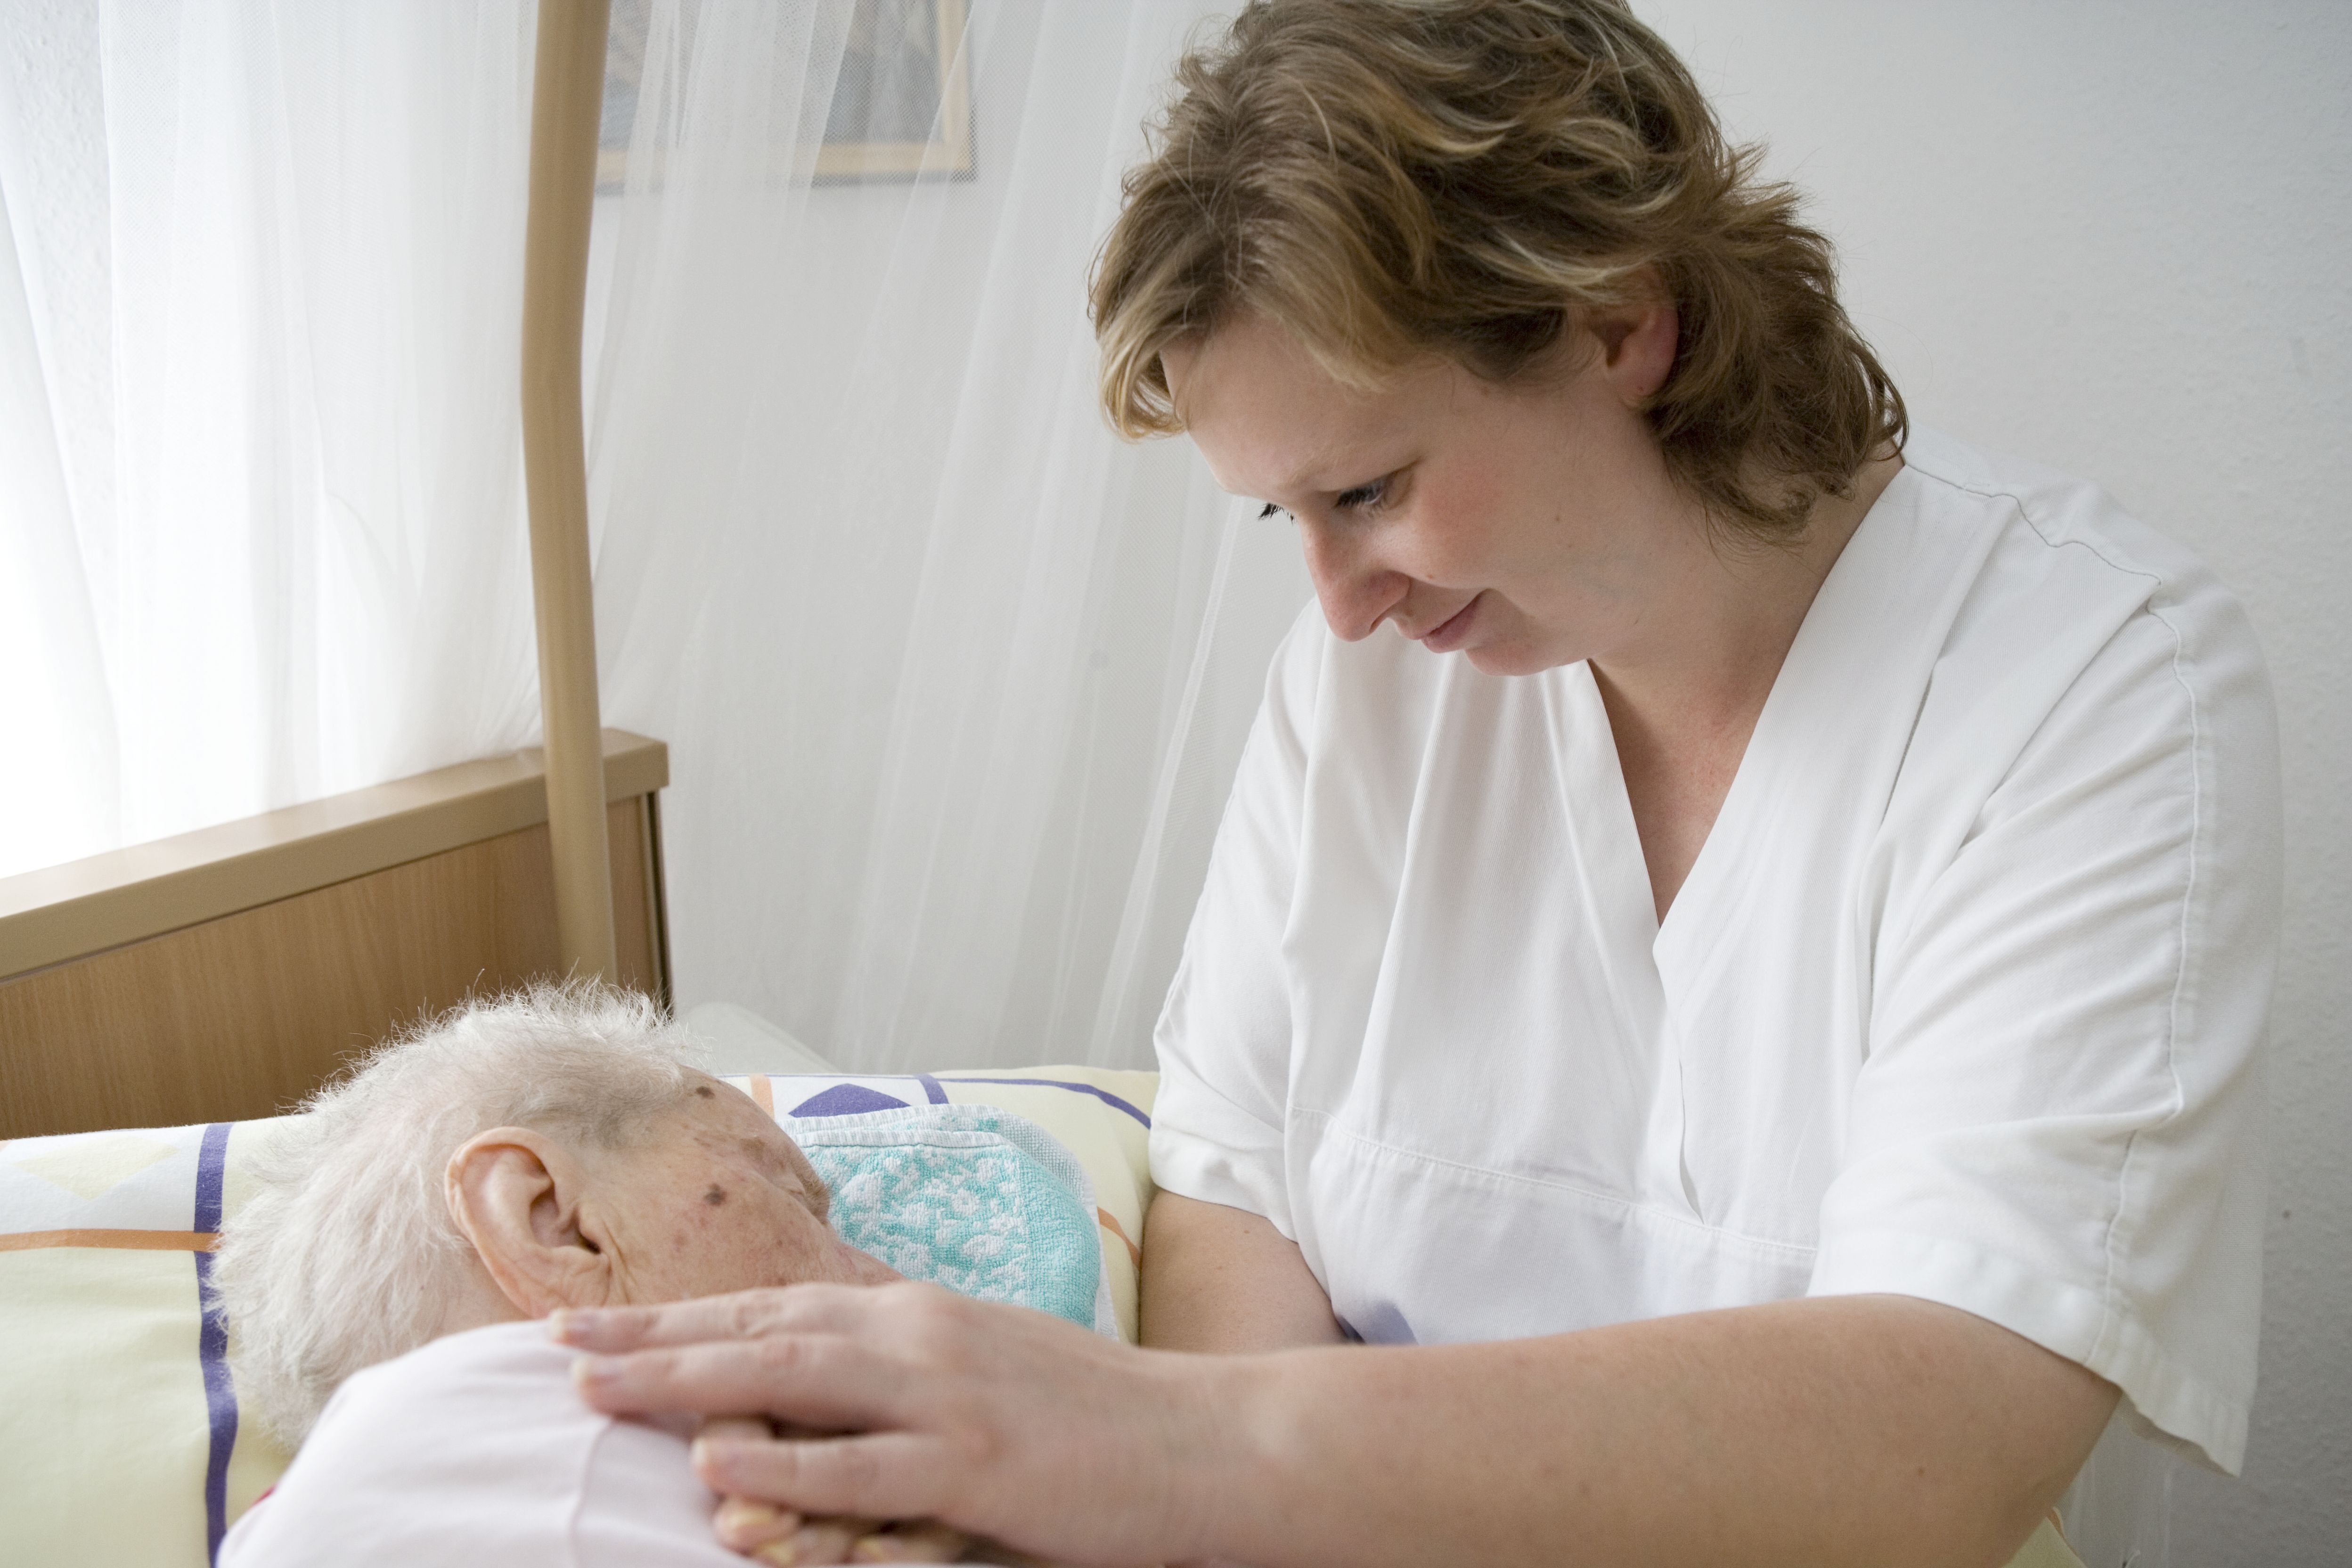 Erster Palliative Care-Kurs für Pflegefachkräfte im ASB-Bildungszentrum in Leipzig gestartet